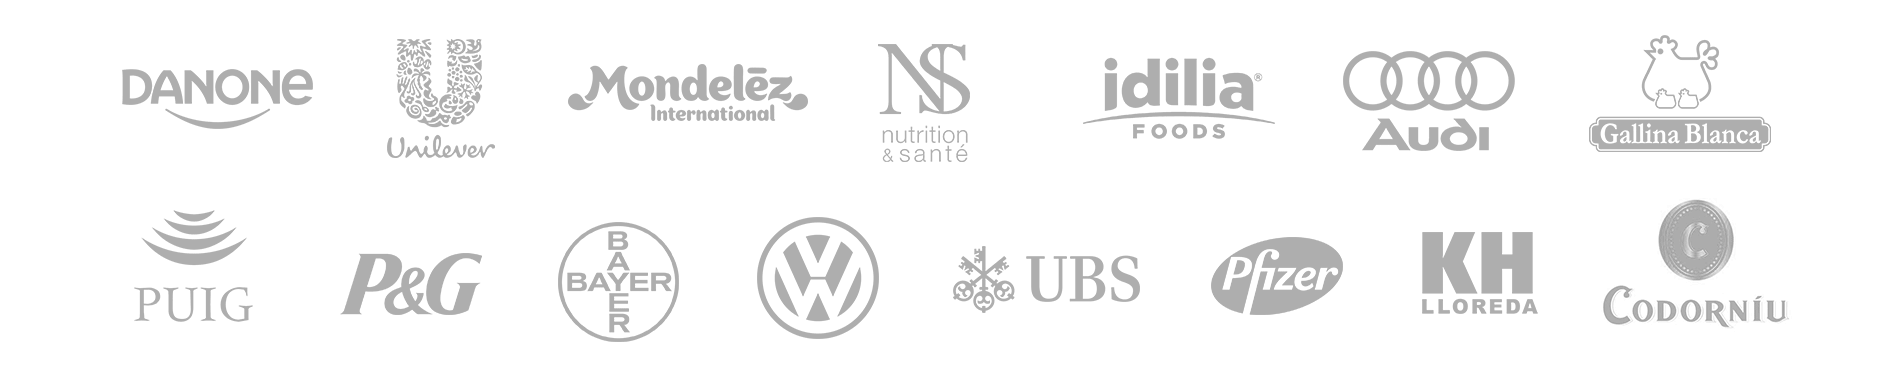 Logos desktop